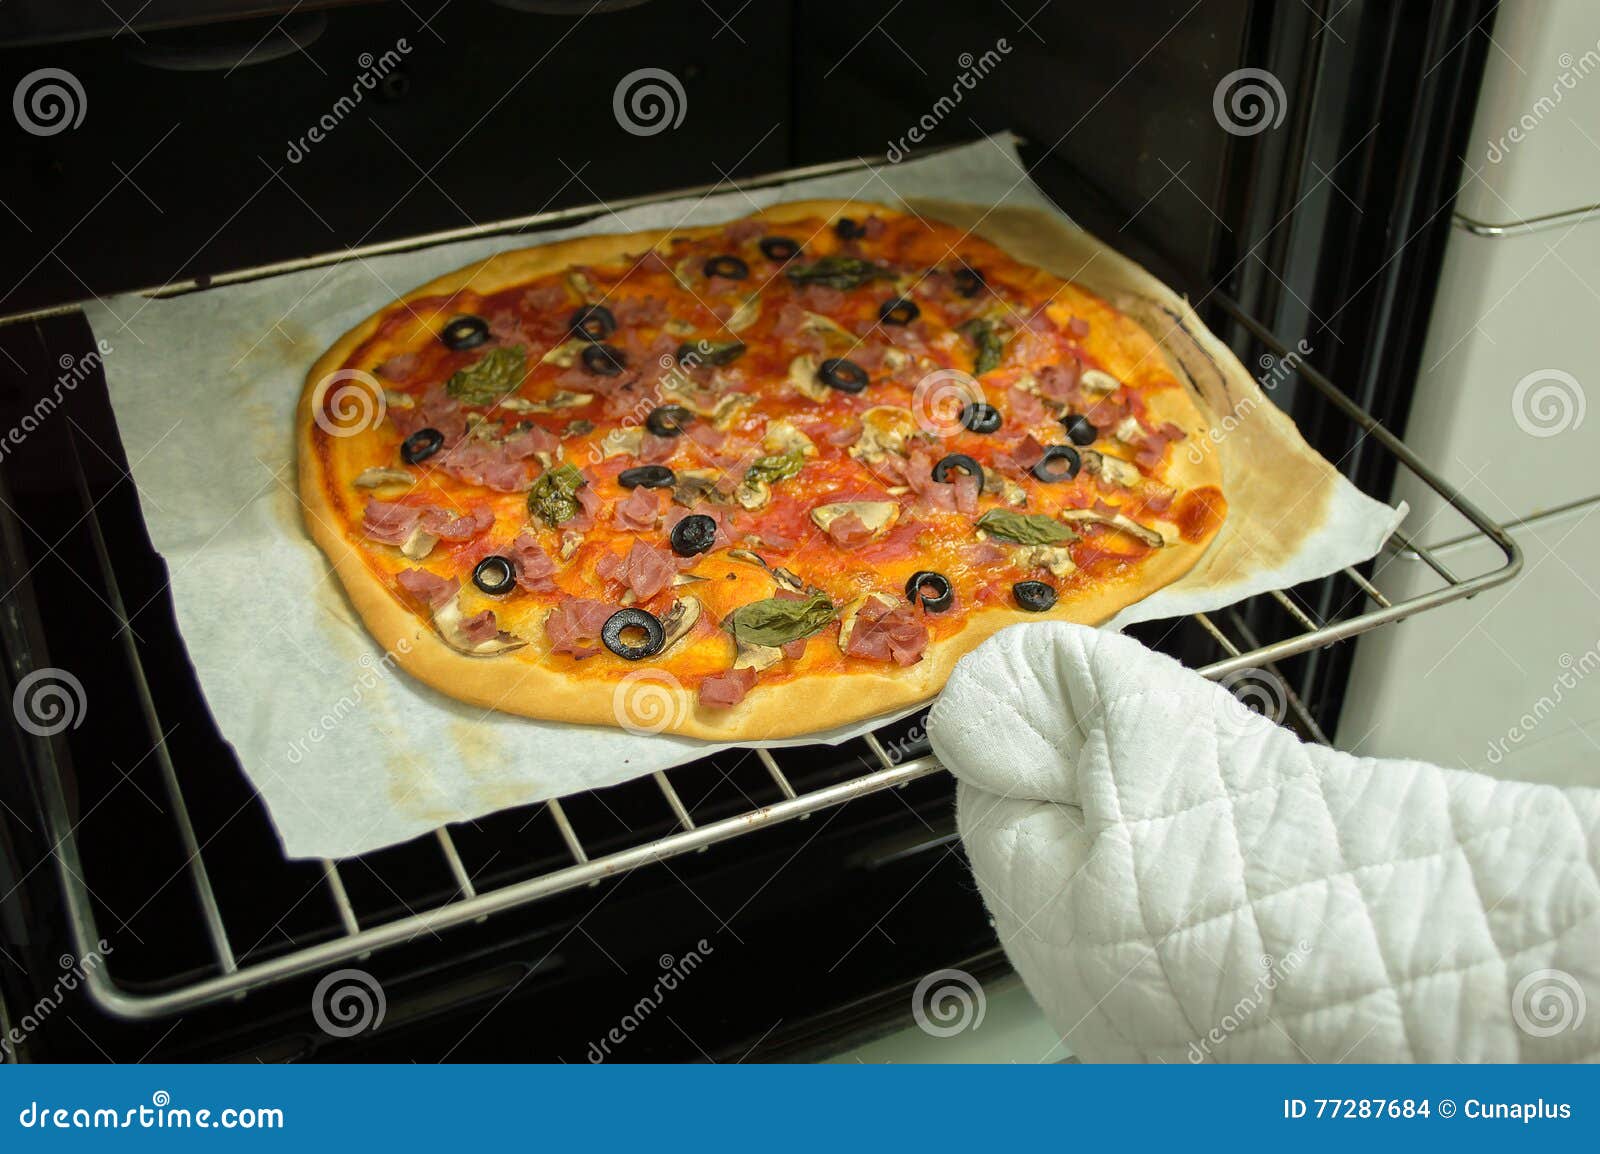 чтобы пицца не сохла в духовке фото 26